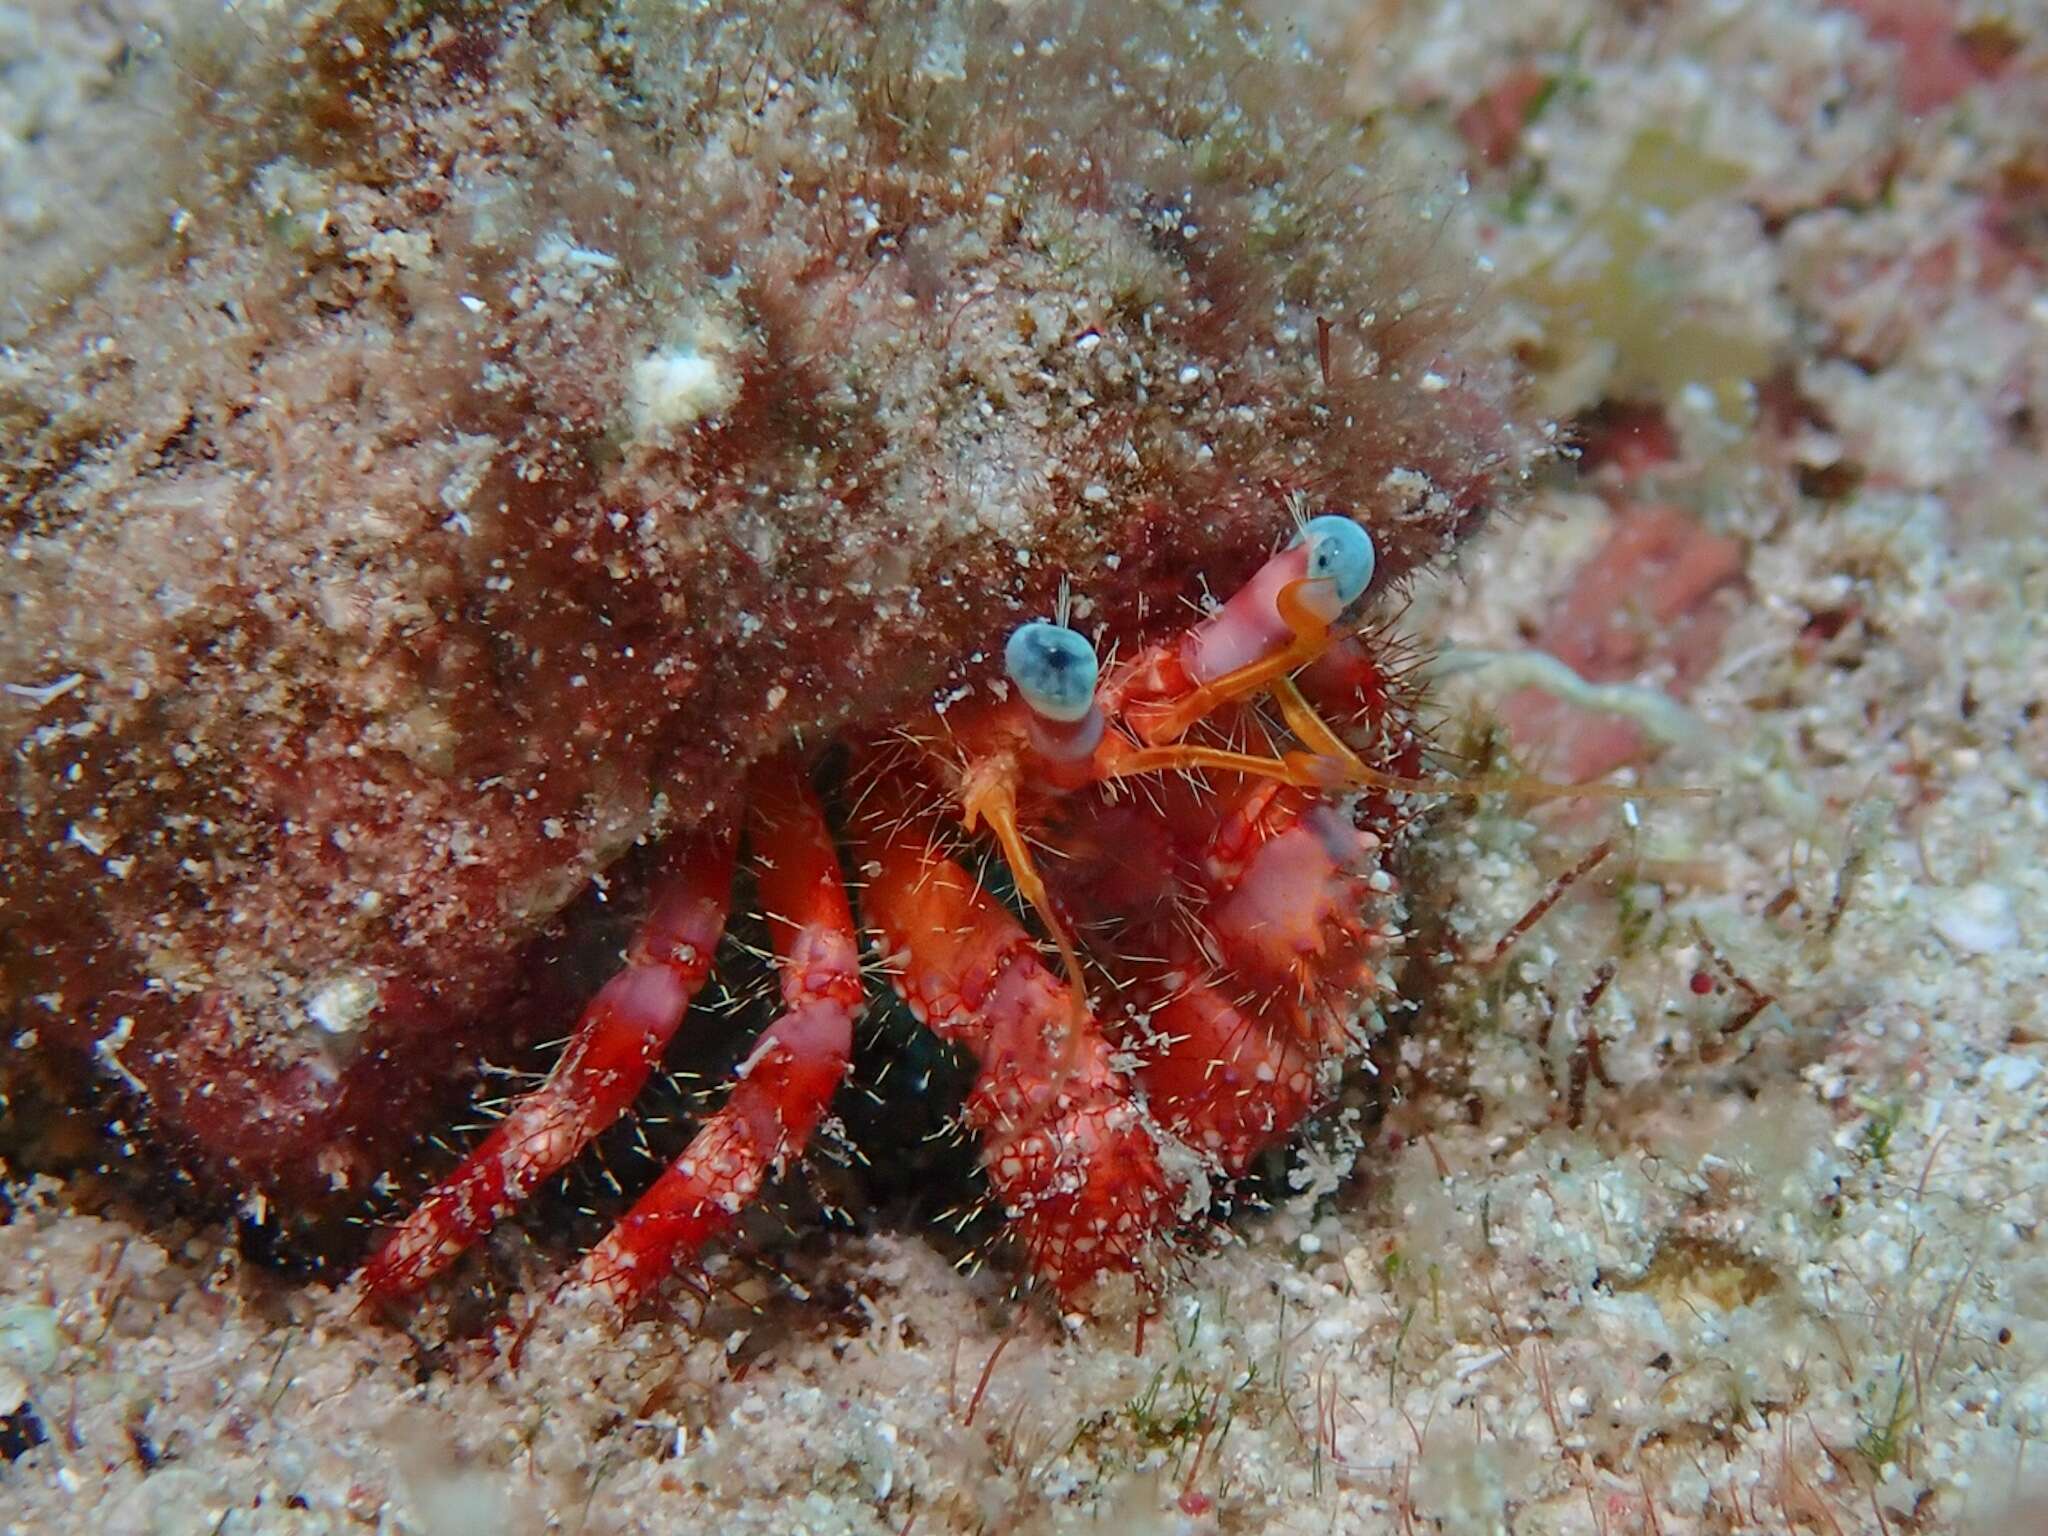 Image of stareye hermit crab